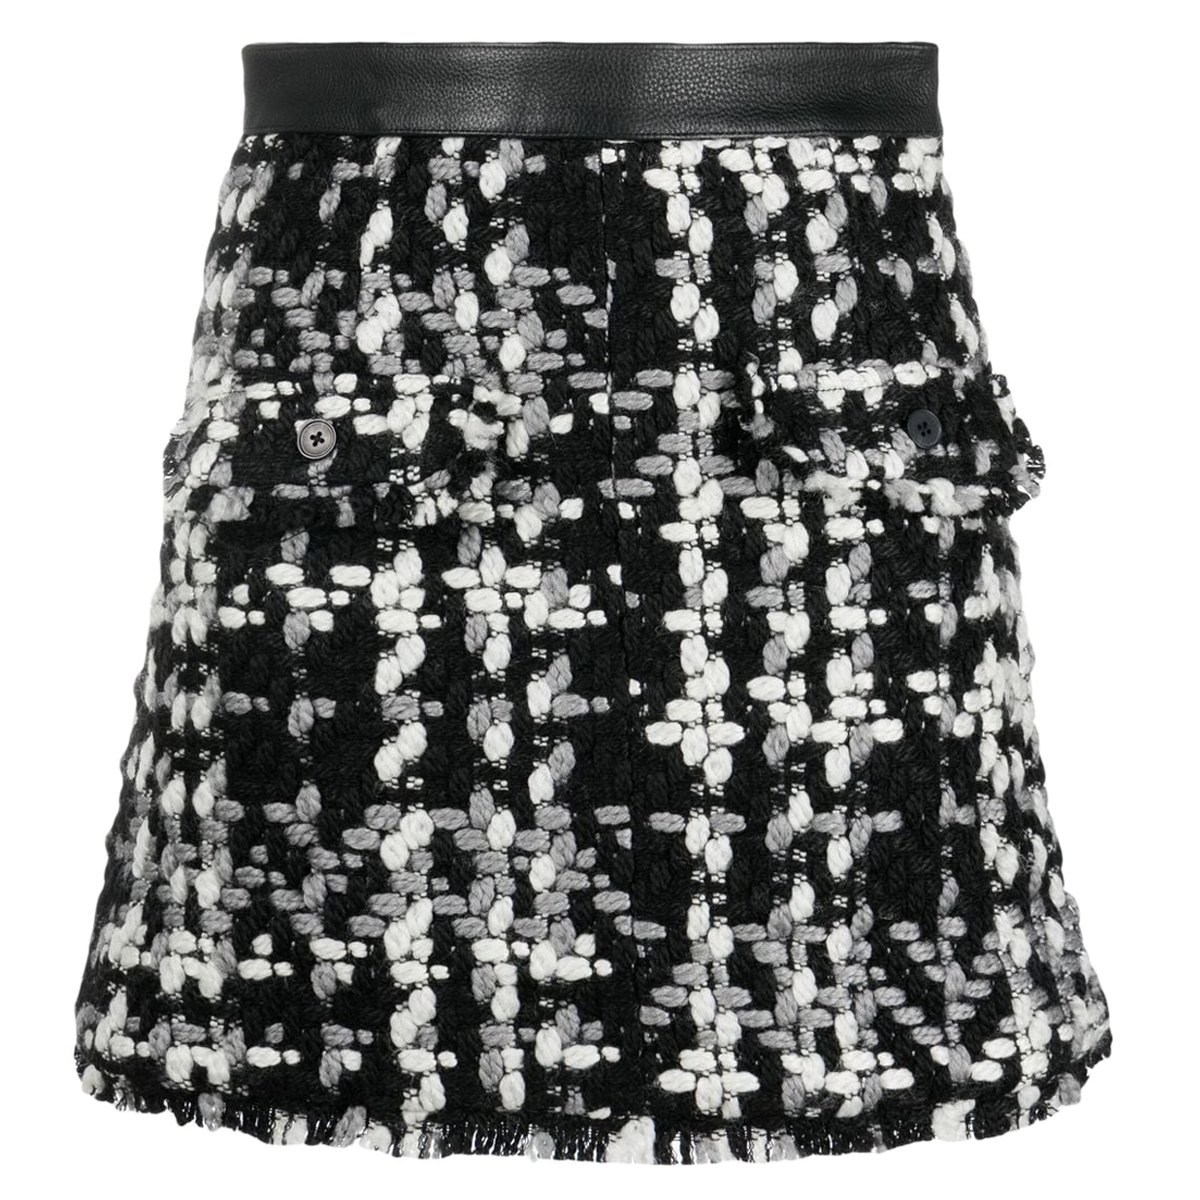 Tasja Skirt Black Comb. 34